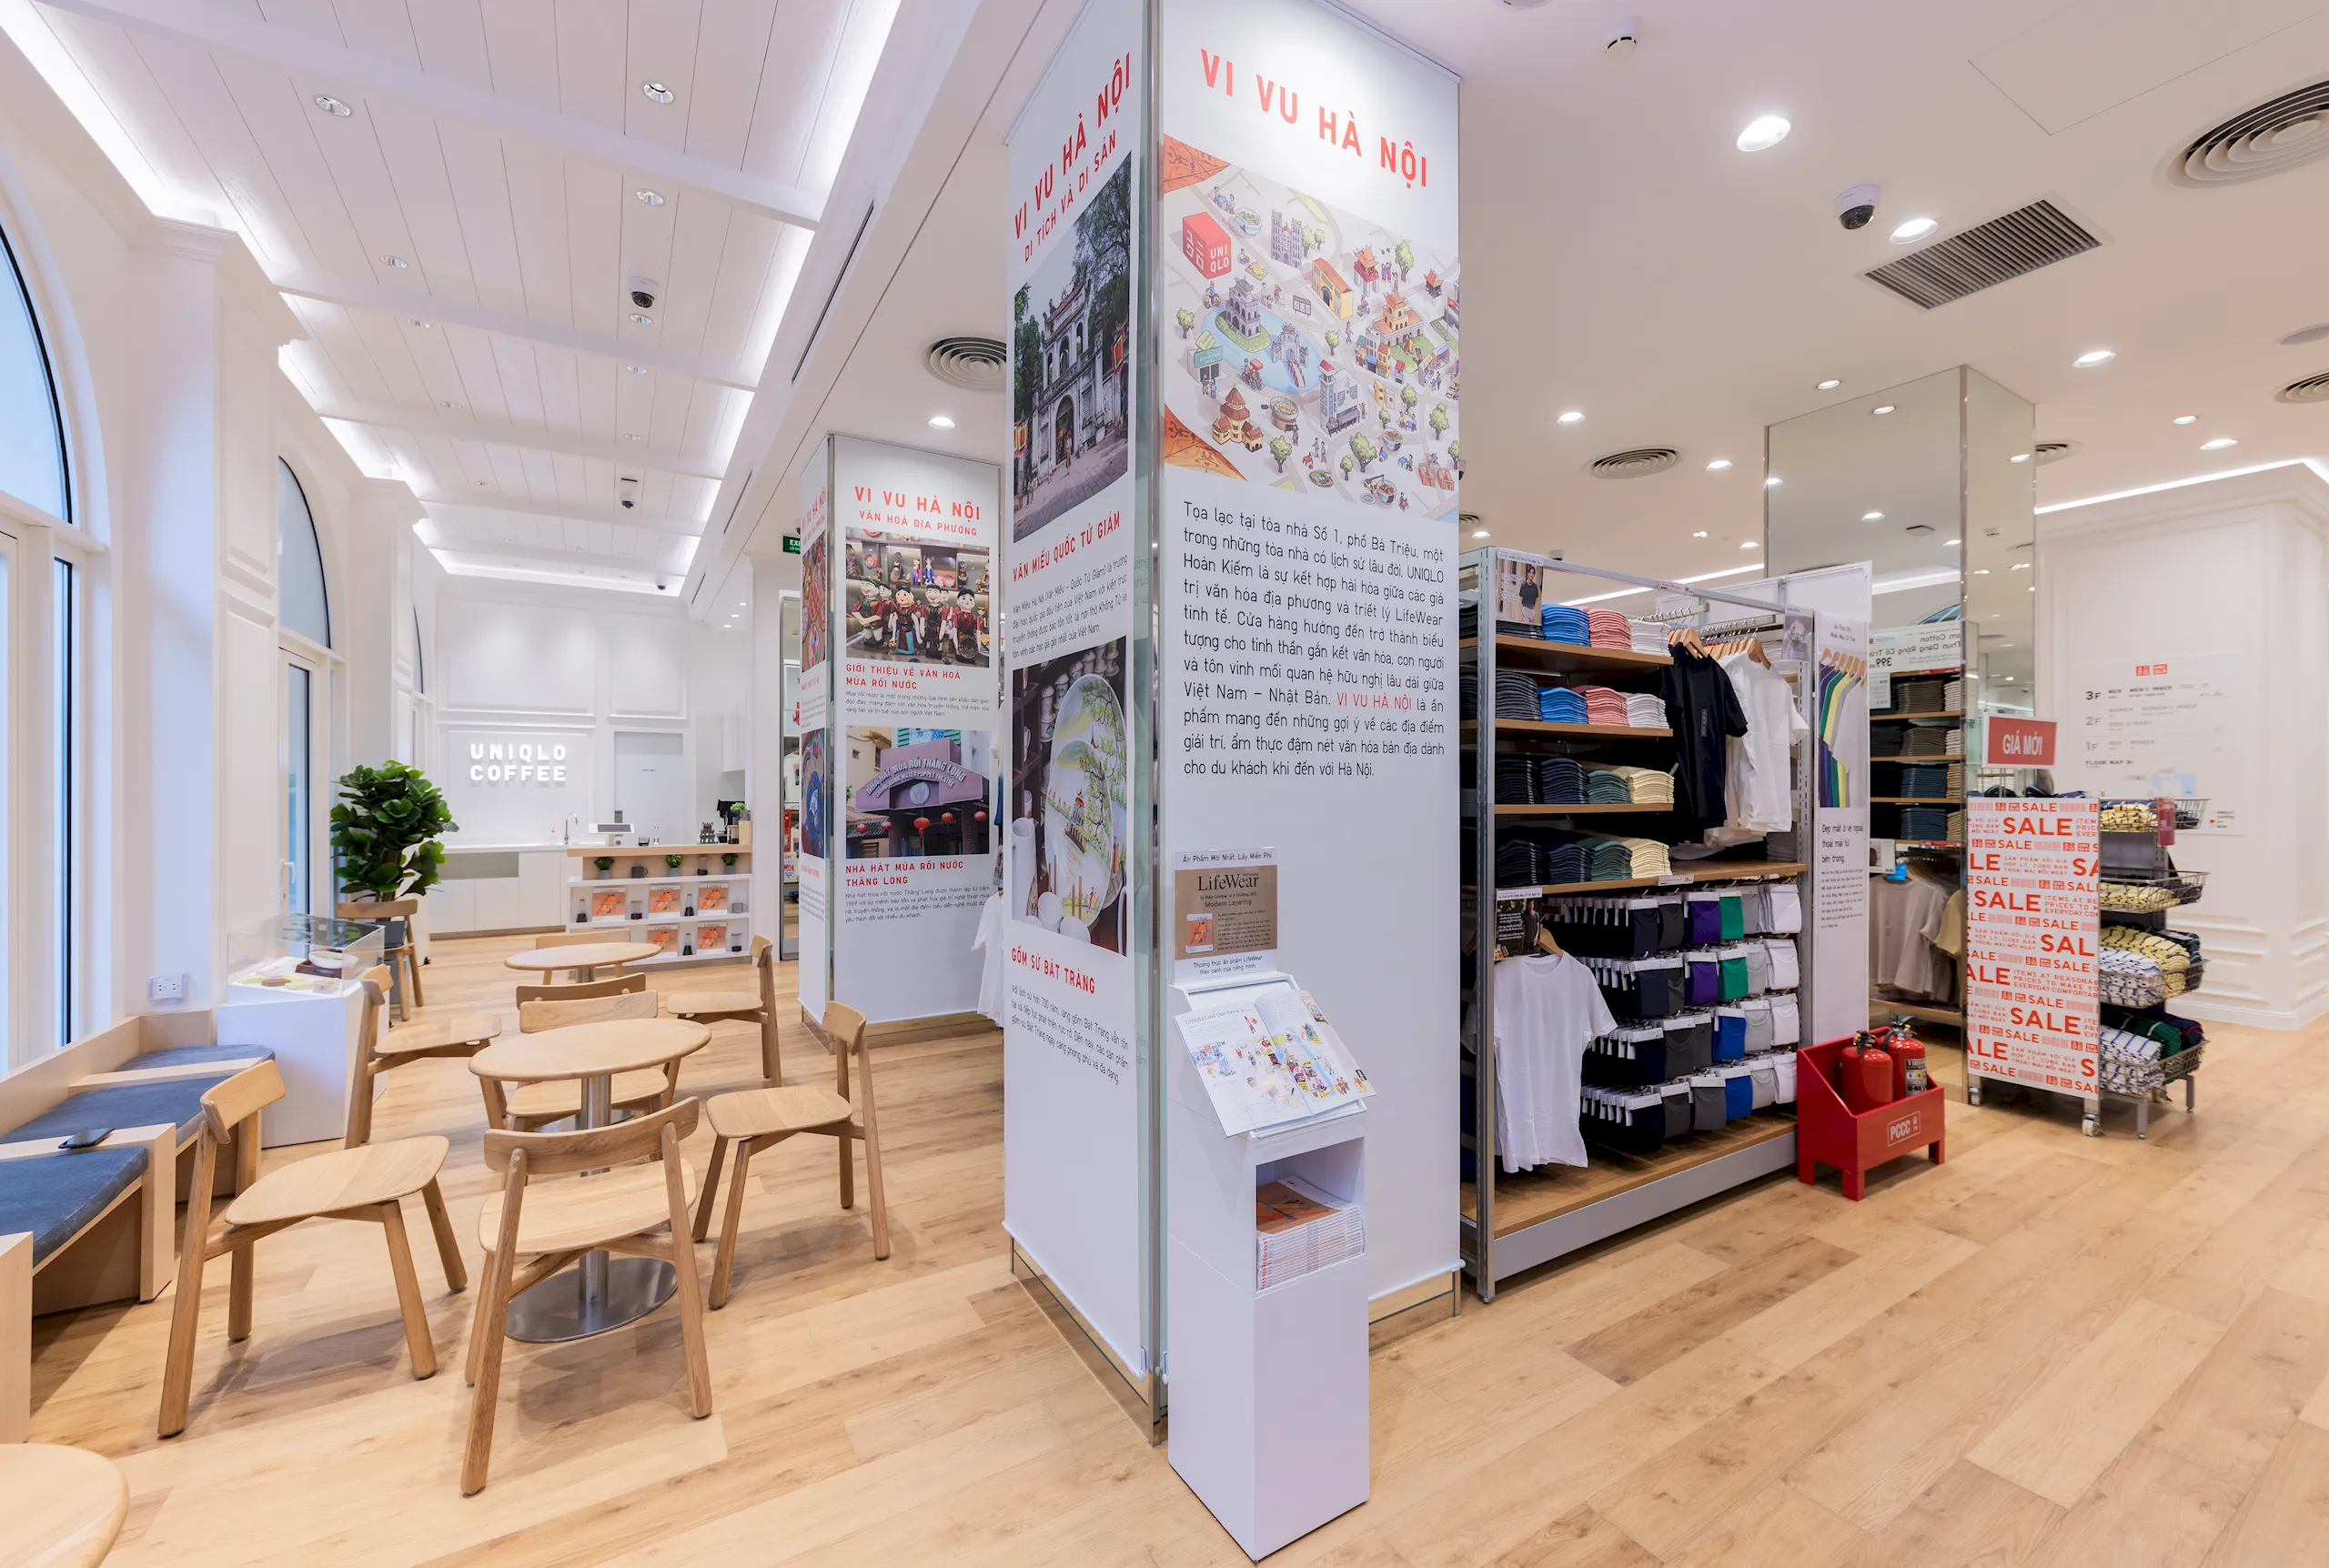 UNIQLO tôn vinh văn hóa Việt – Nhật trong cửa hàng Hoàn Kiếm, cam kết đóng góp dài hạn cho sự phát triển kinh tế, xã hội của Việt Nam